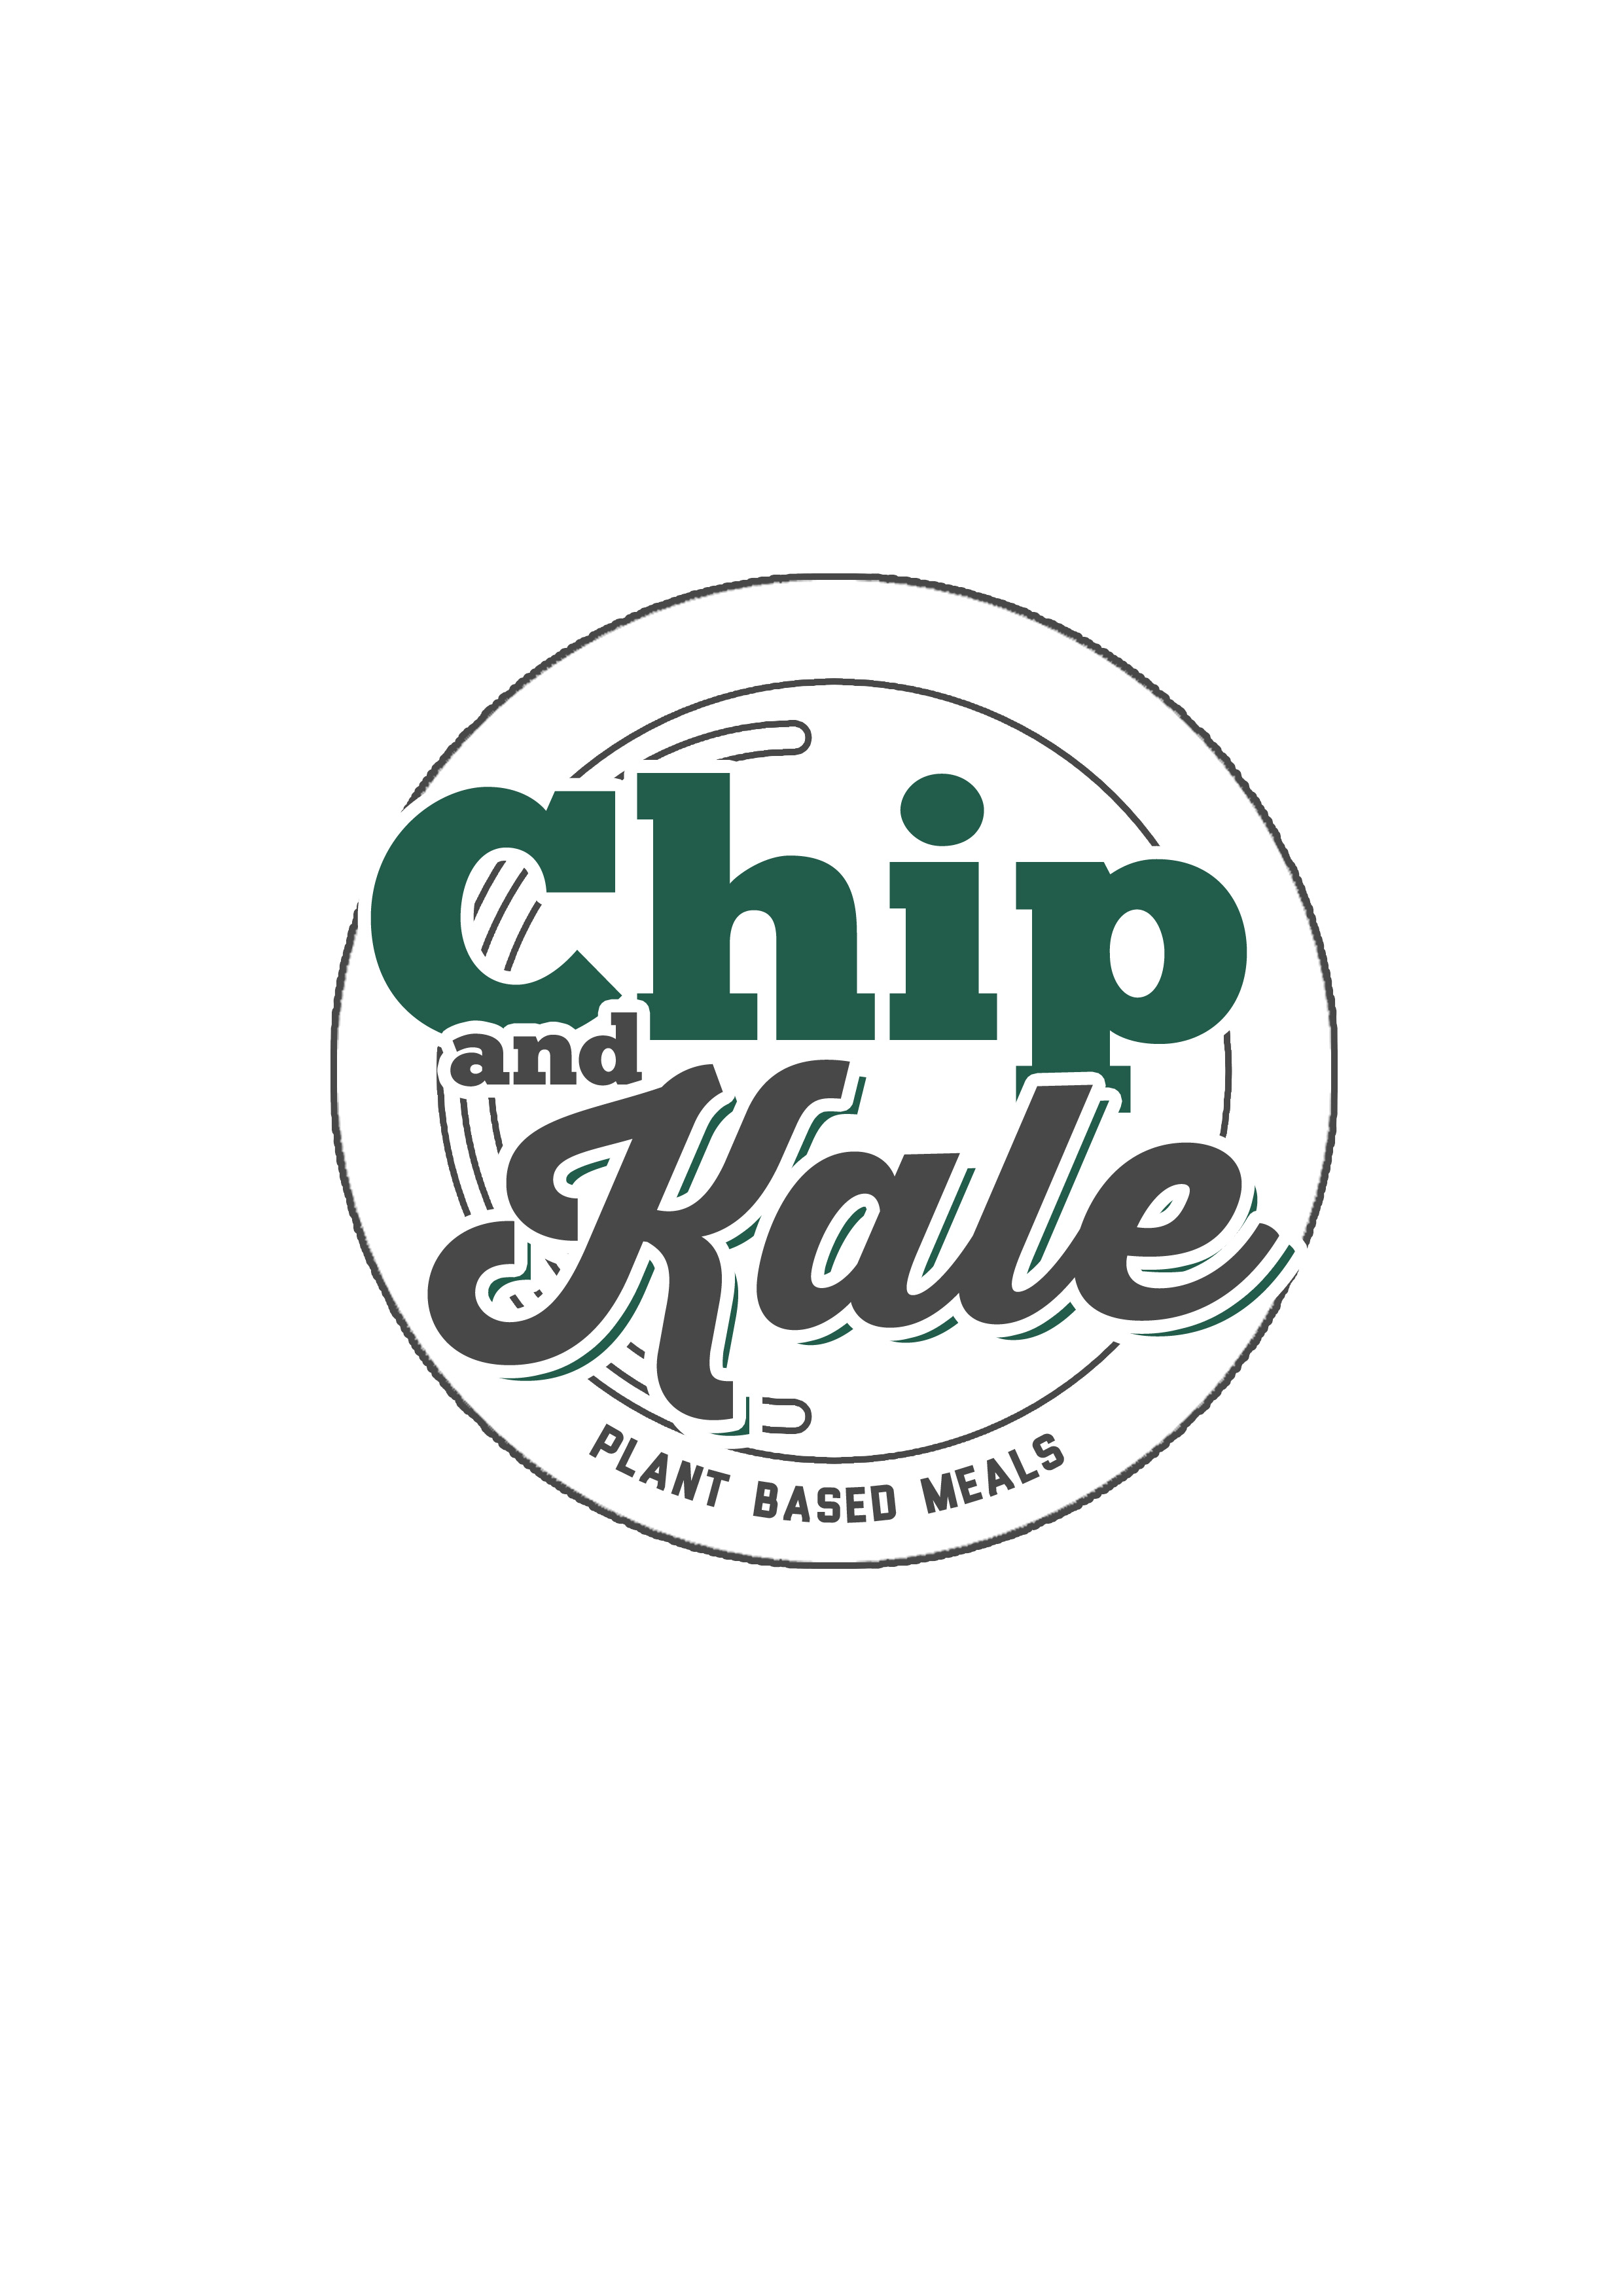 Chip and Kale Affiliation Program